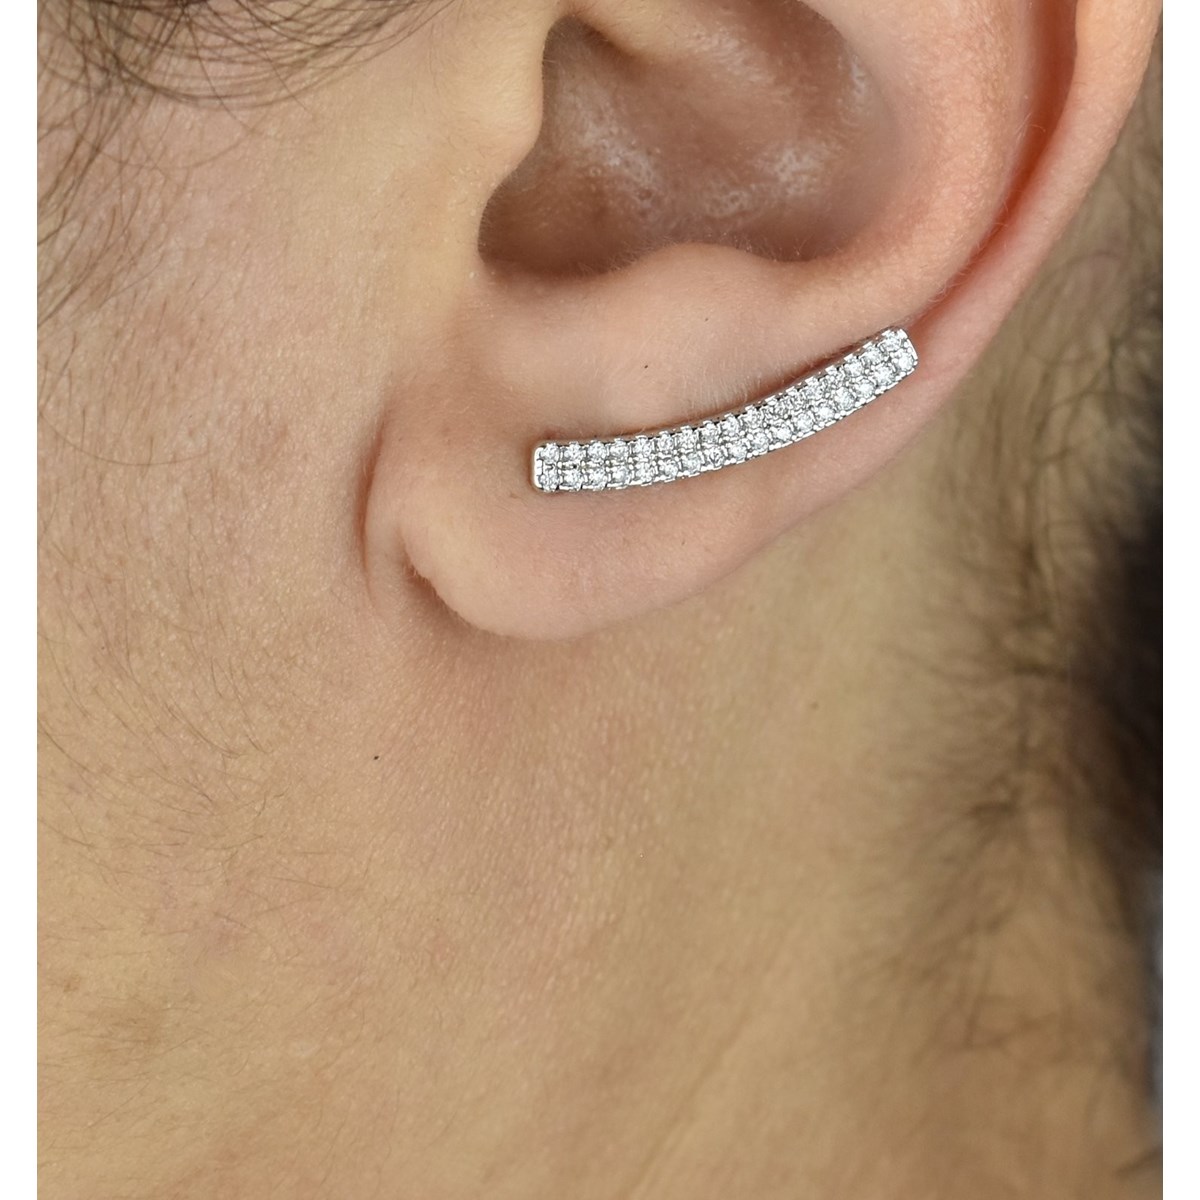 Boucles d'oreilles grimpantes barre 2 rangs contour de lobe serti d'oxydes de zirconium Argent 925 Rhodié - vue 2